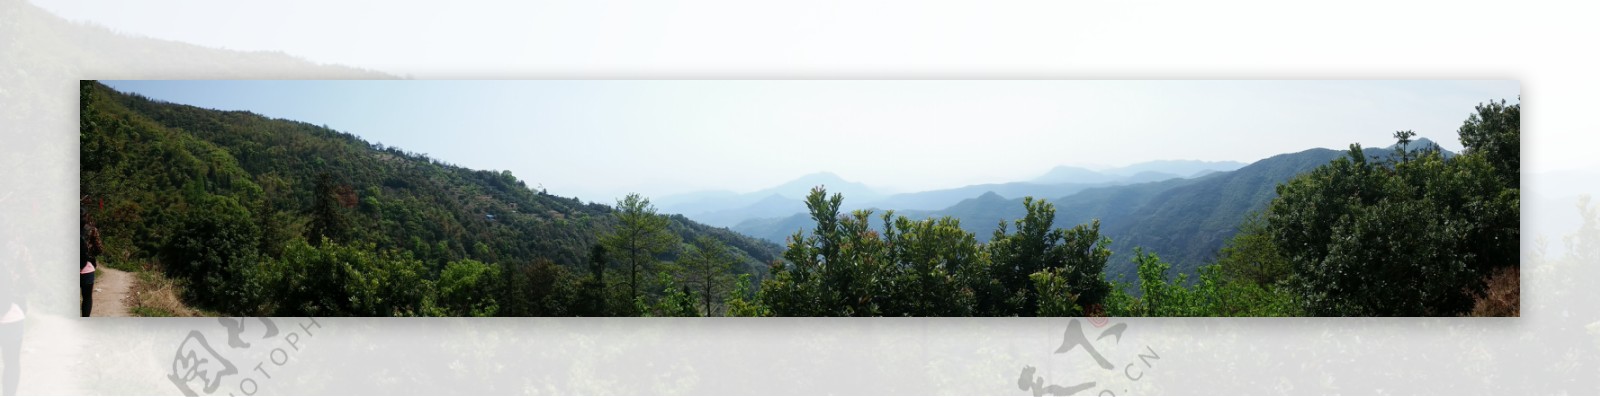 山区全景风景图图片